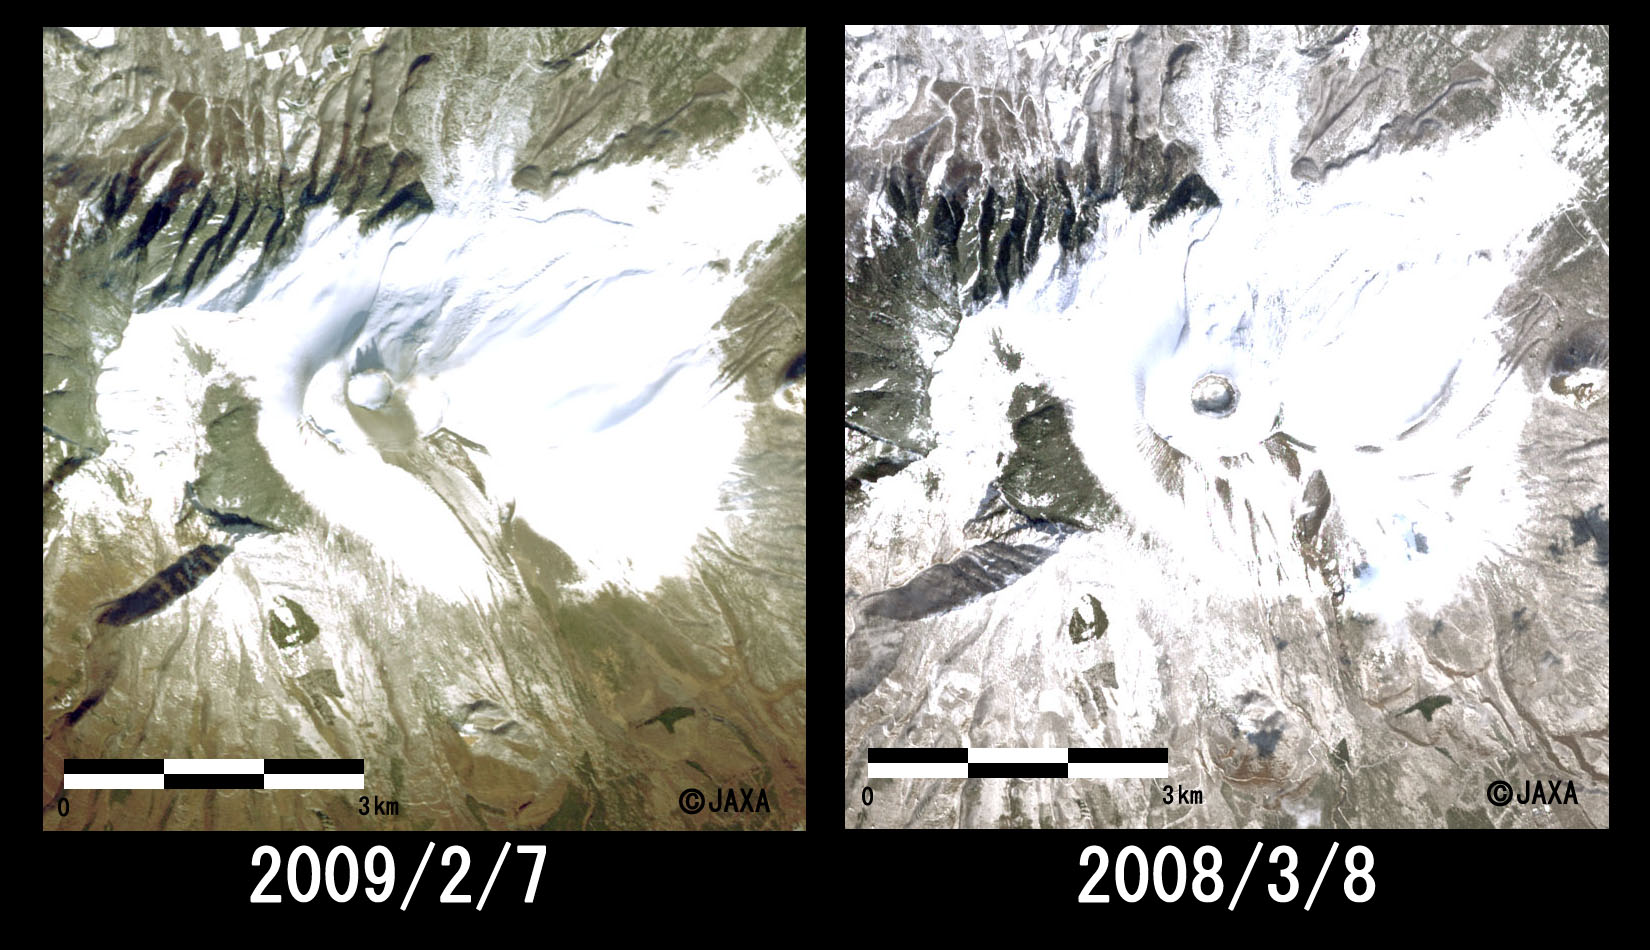 図2: 浅間山山頂付近の拡大(左: 噴火後、右: 噴火前)